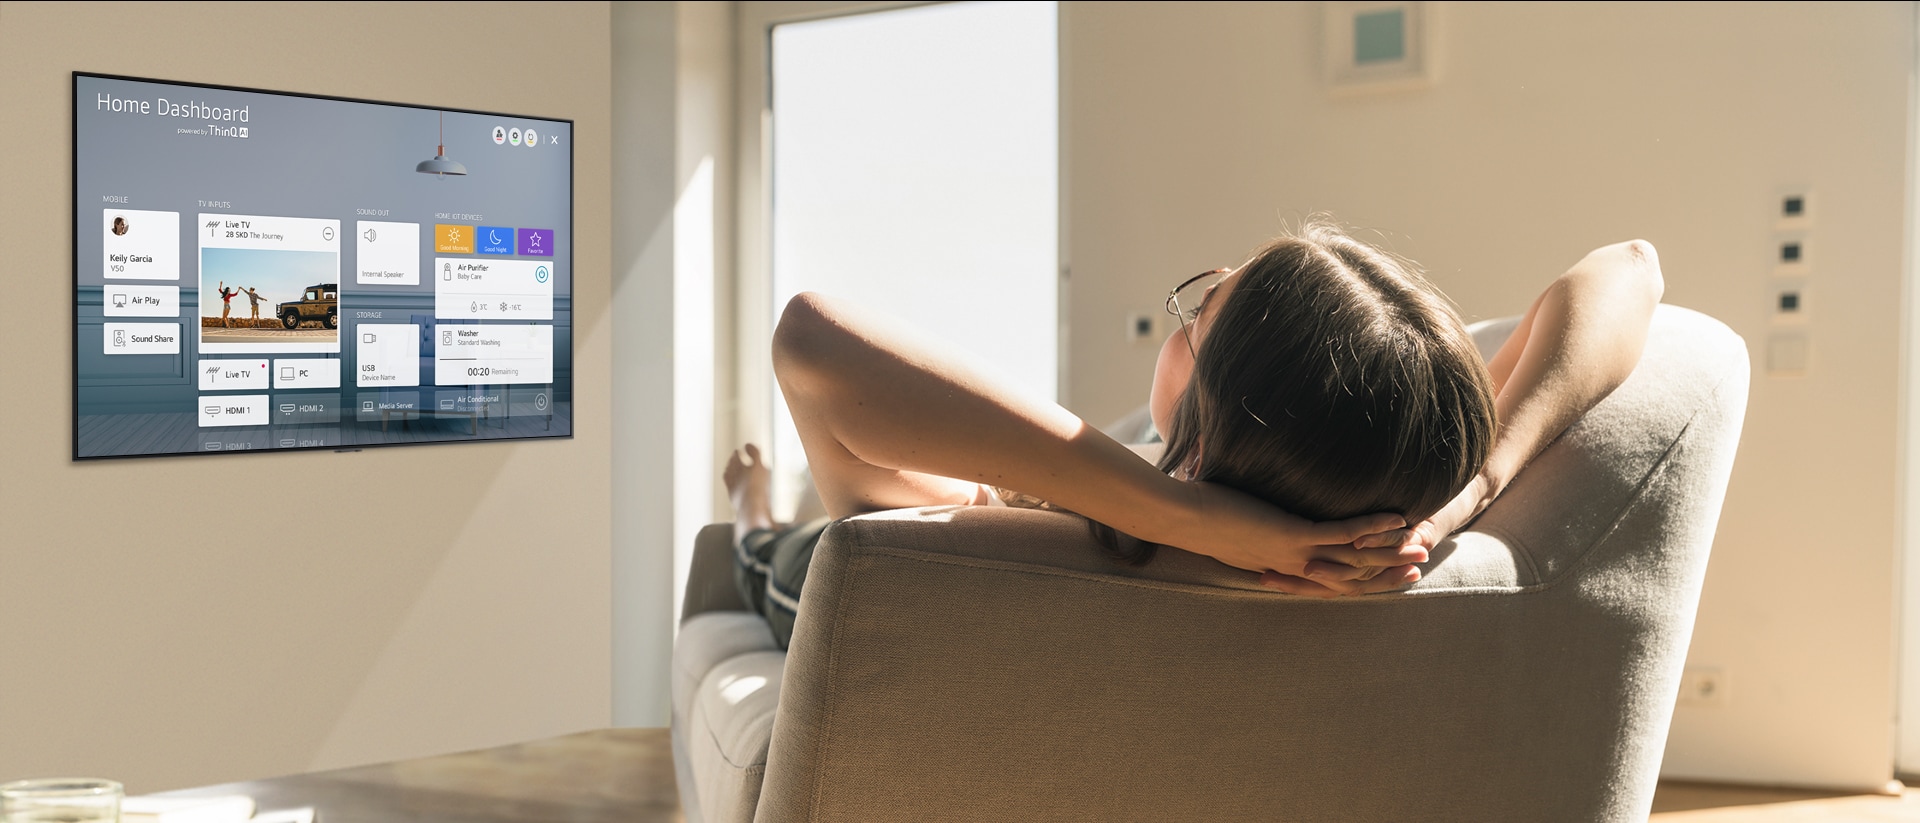 Una mujer acostada en un sofá que le dice al televisor que baje la temperatura con Home Dashboard en la pantalla del televisor